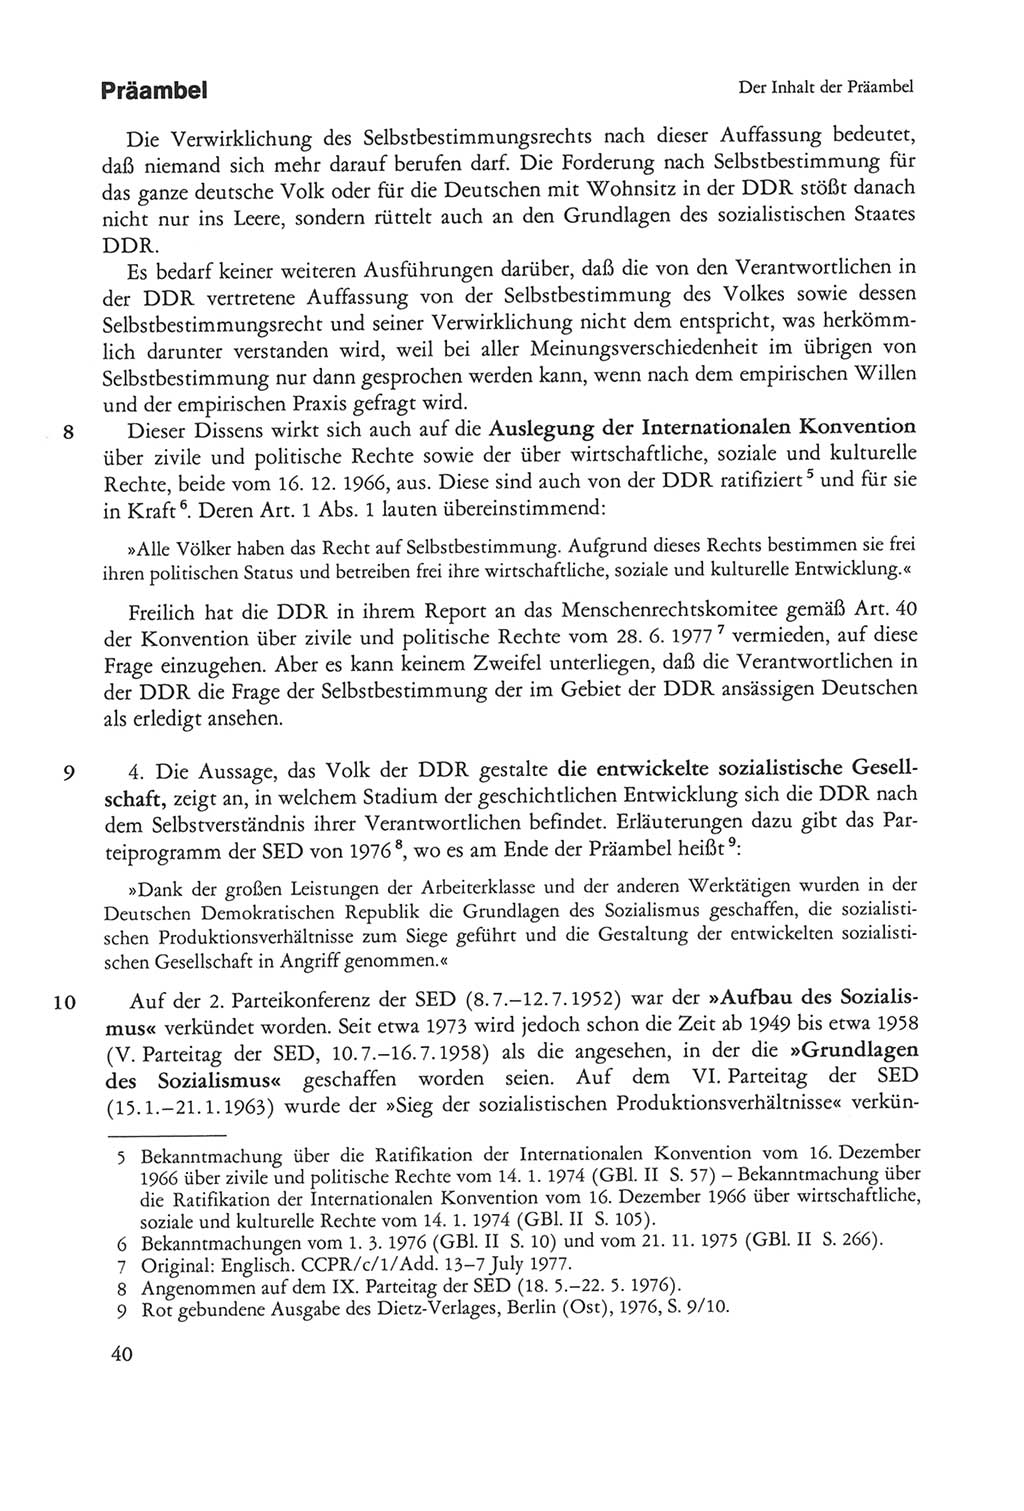 Die sozialistische Verfassung der Deutschen Demokratischen Republik (DDR), Kommentar 1982, Seite 40 (Soz. Verf. DDR Komm. 1982, S. 40)